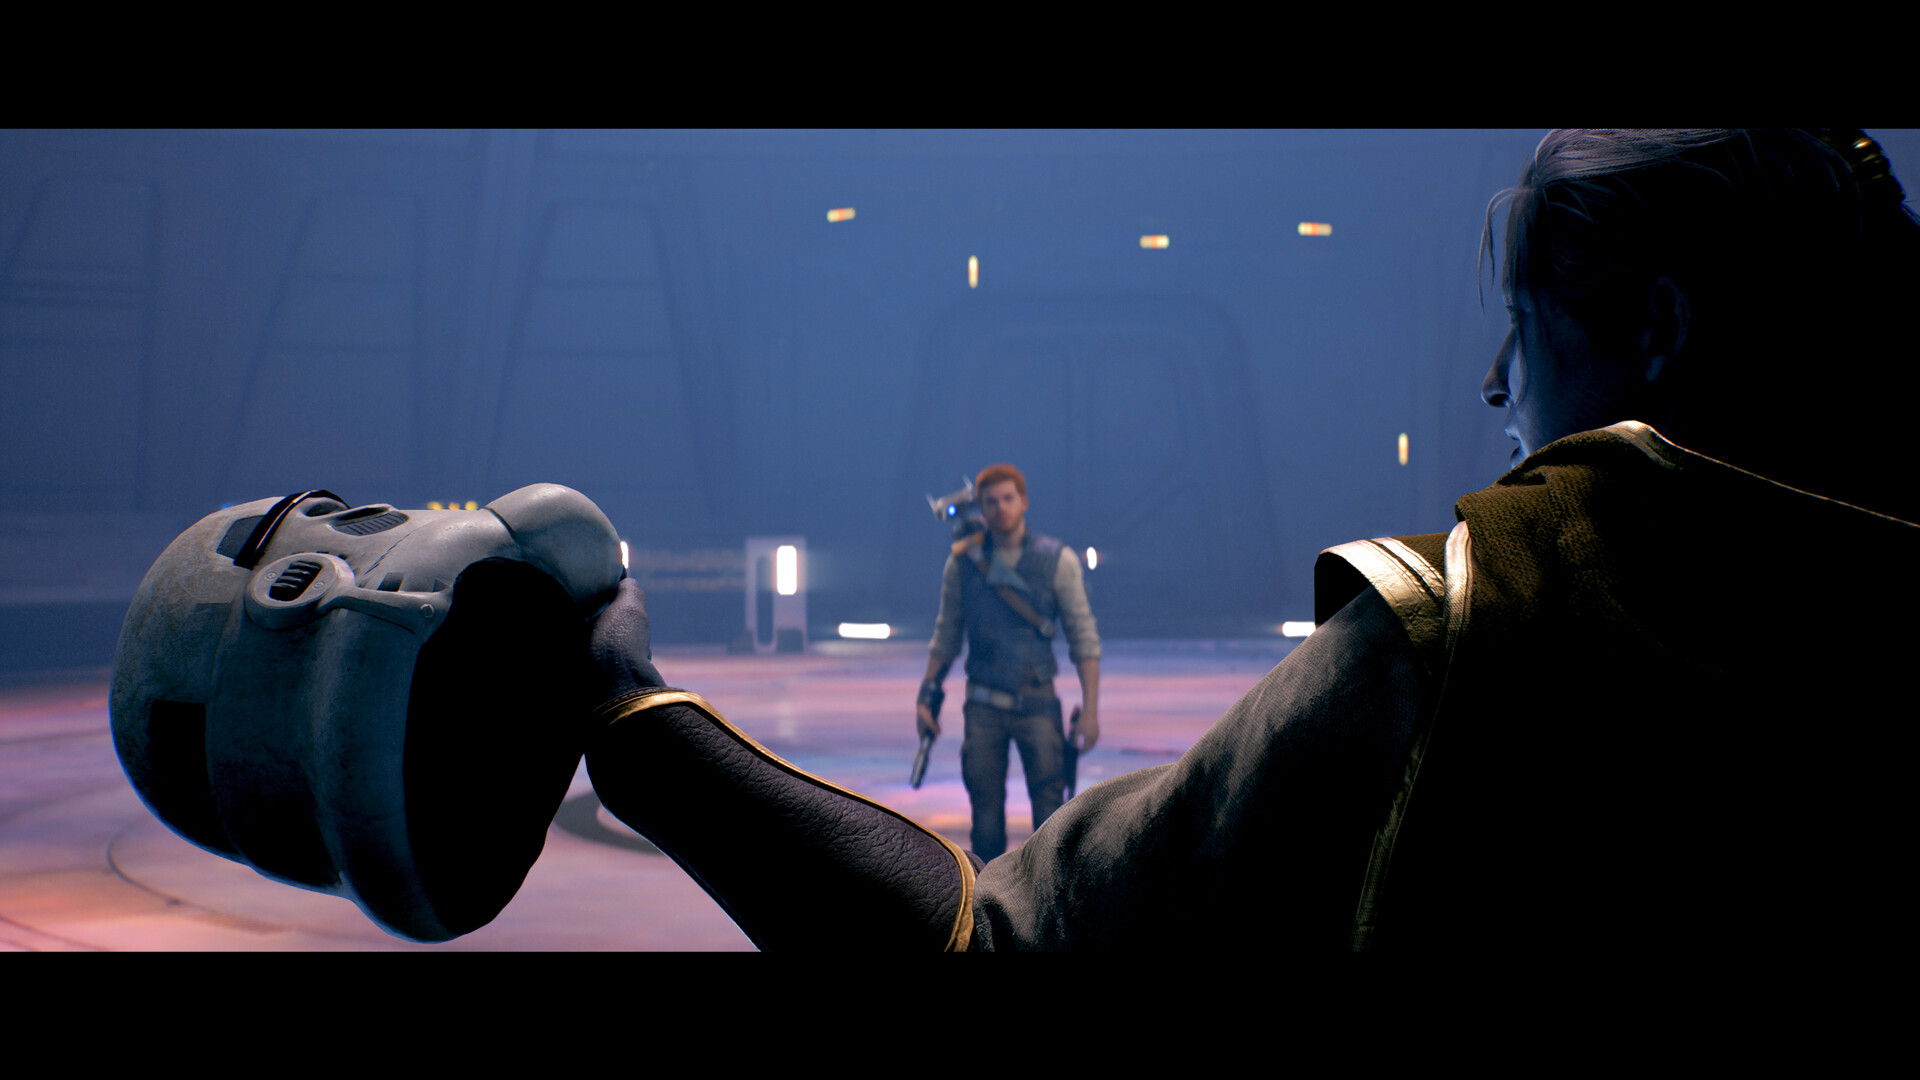 Jedi: Survivor' Getting Last-Gen Ports - Star Wars News Net